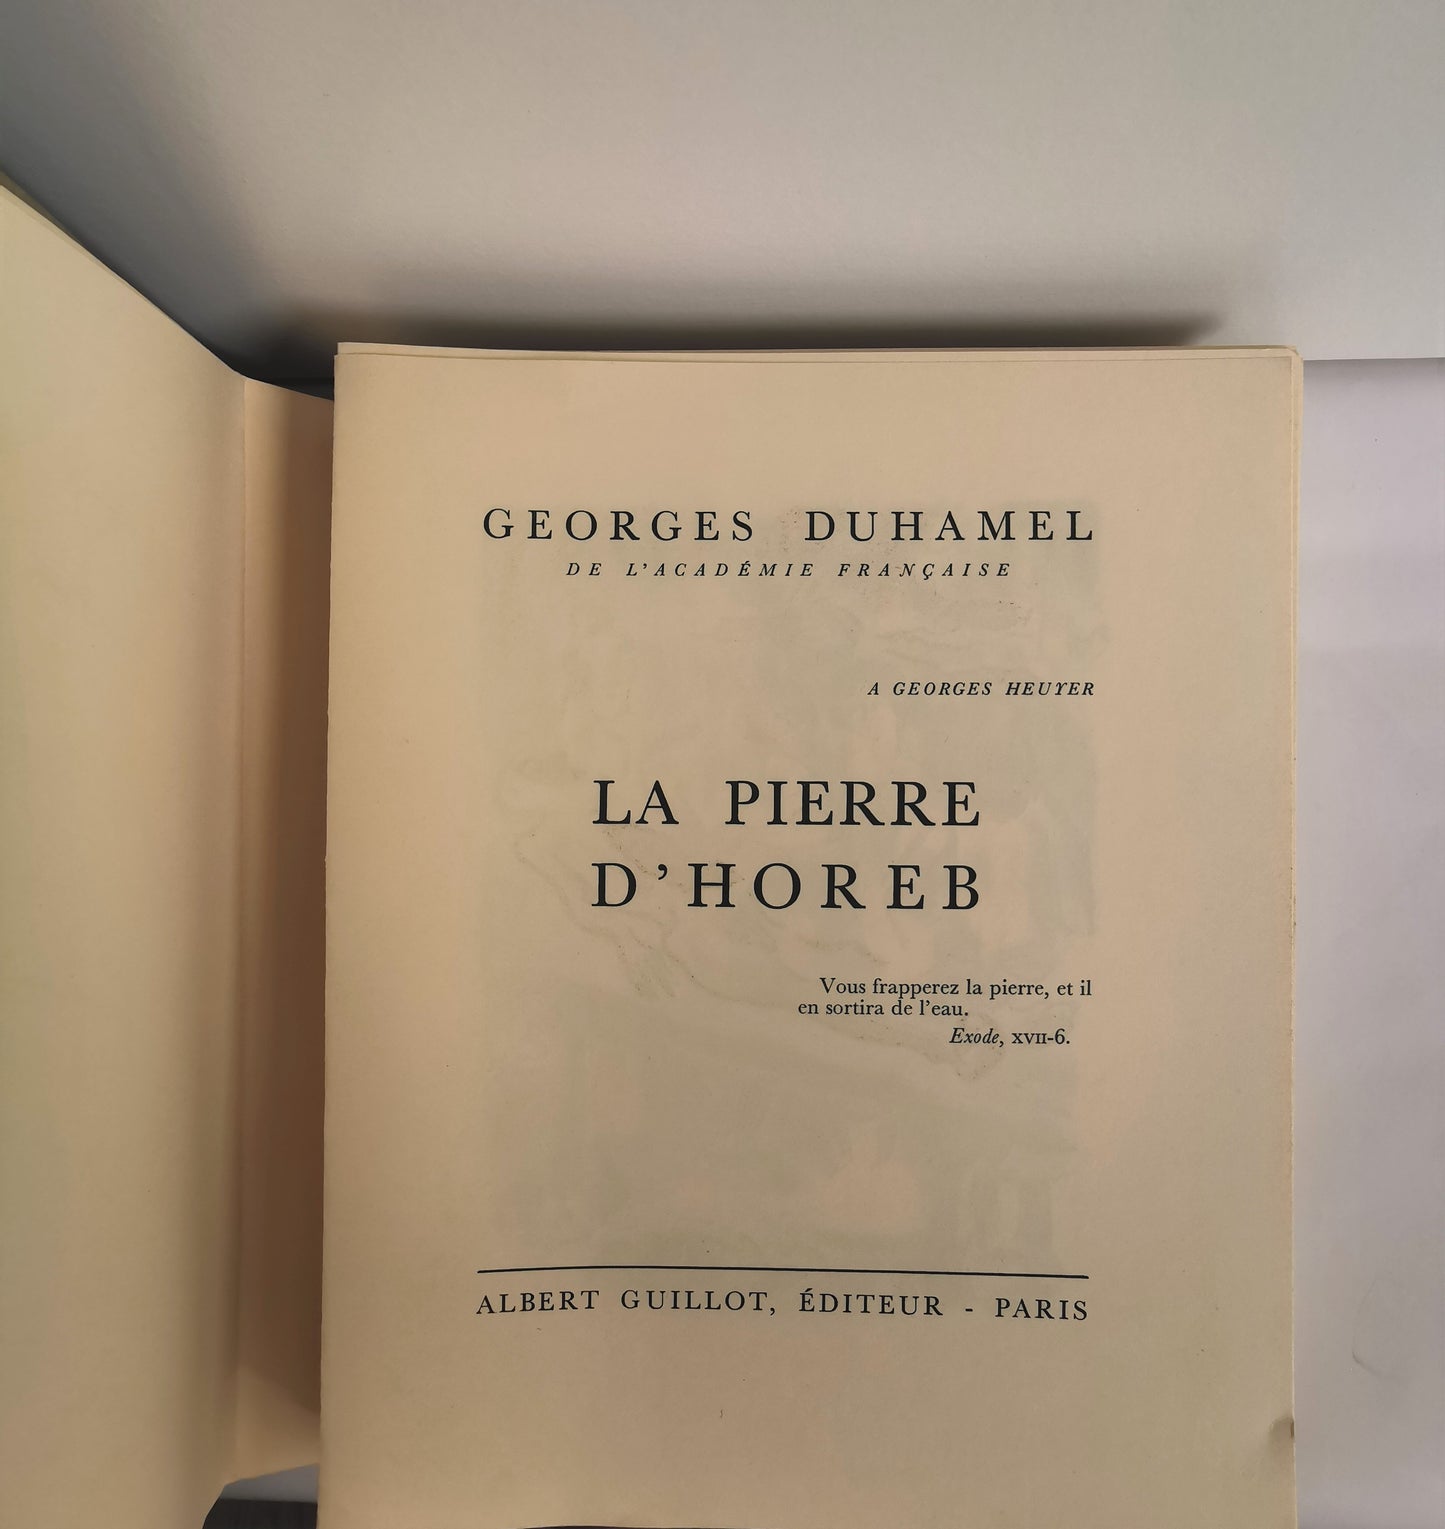 La Pierre d'Horeb, Georges Duhamel, illustrations de André Hambourg gravées sur bois en couleurs par Gérard Angiolini, ed. Albert Guillot, 1953.